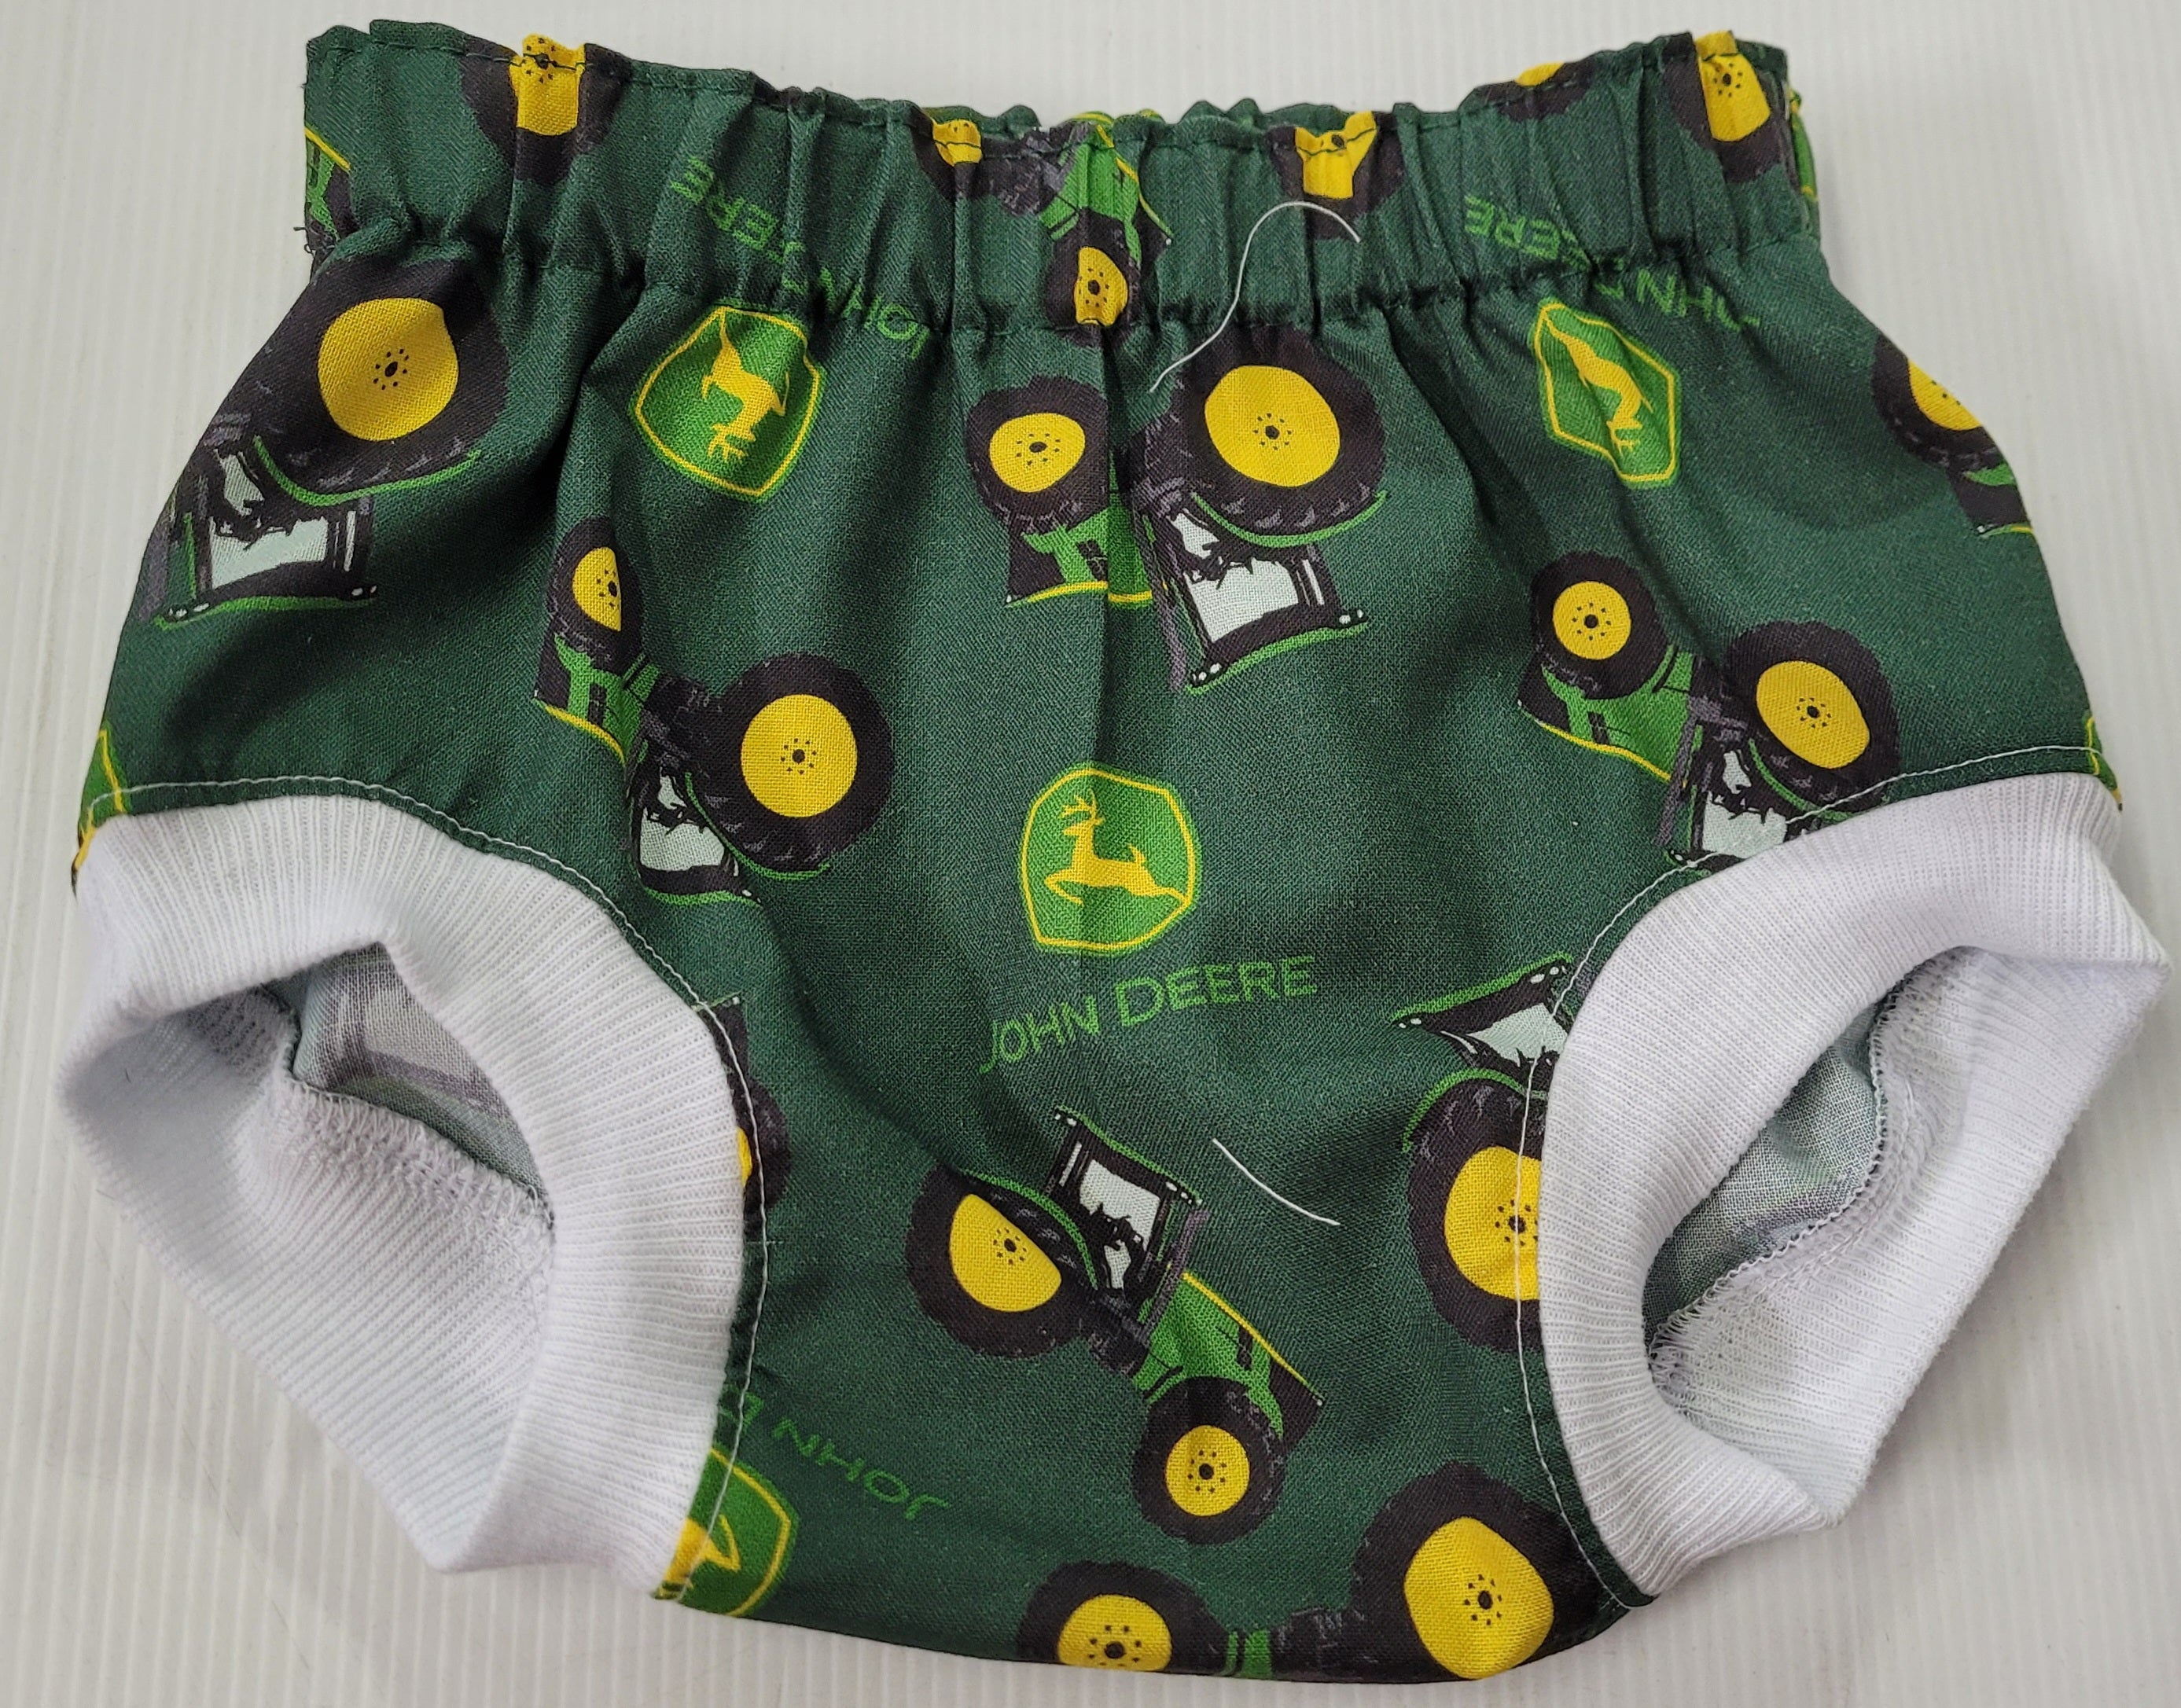 John Deere Boys' Toddler Child Underwear Brief